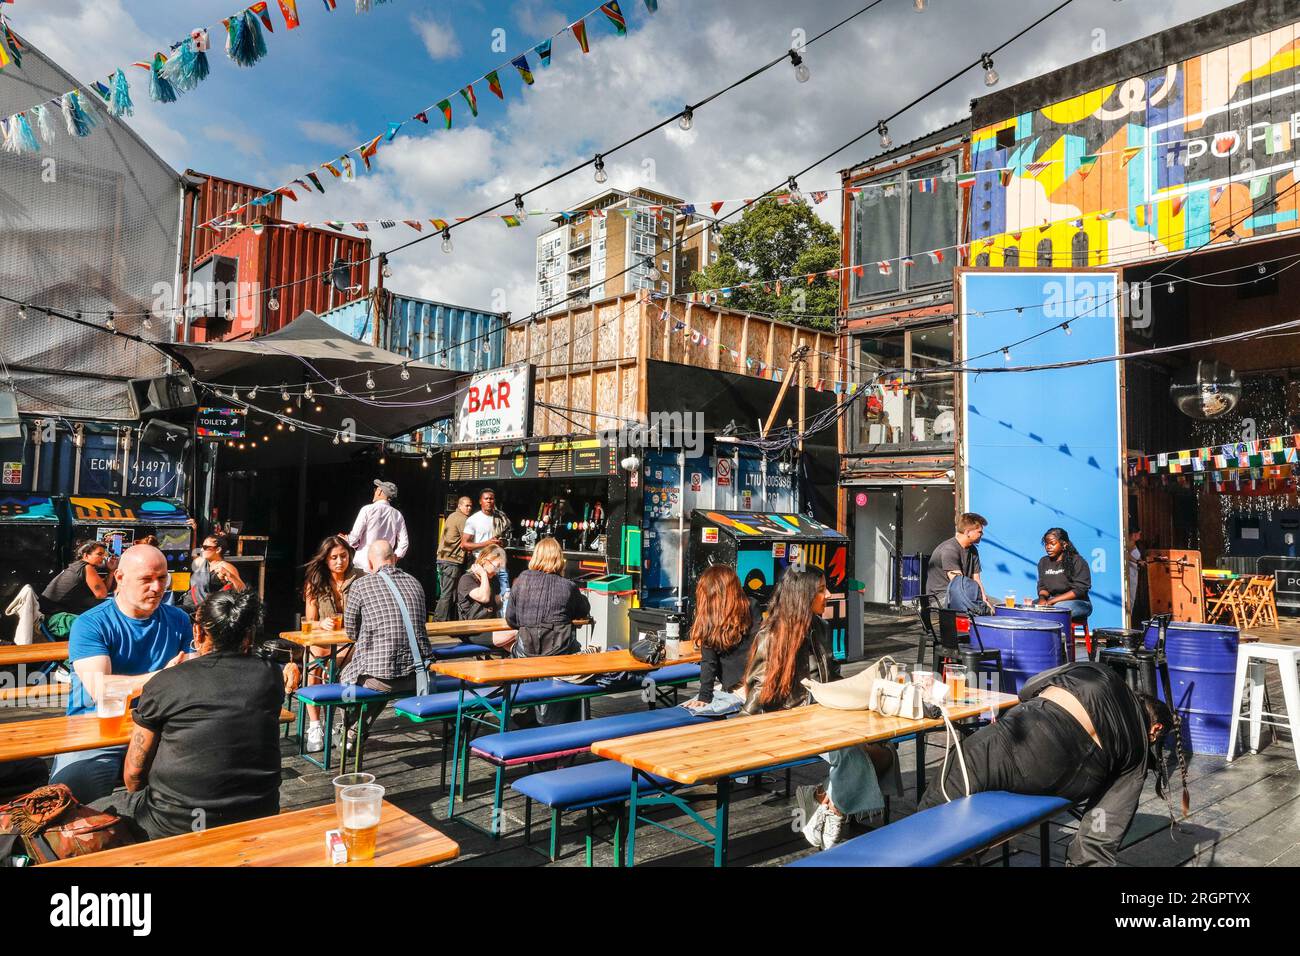 Pop Brixton, progetto di comunità pop-up con bar indipendenti, ristoranti, caffè, luogo di eventi, Brixton, Londra, Regno Unito Foto Stock